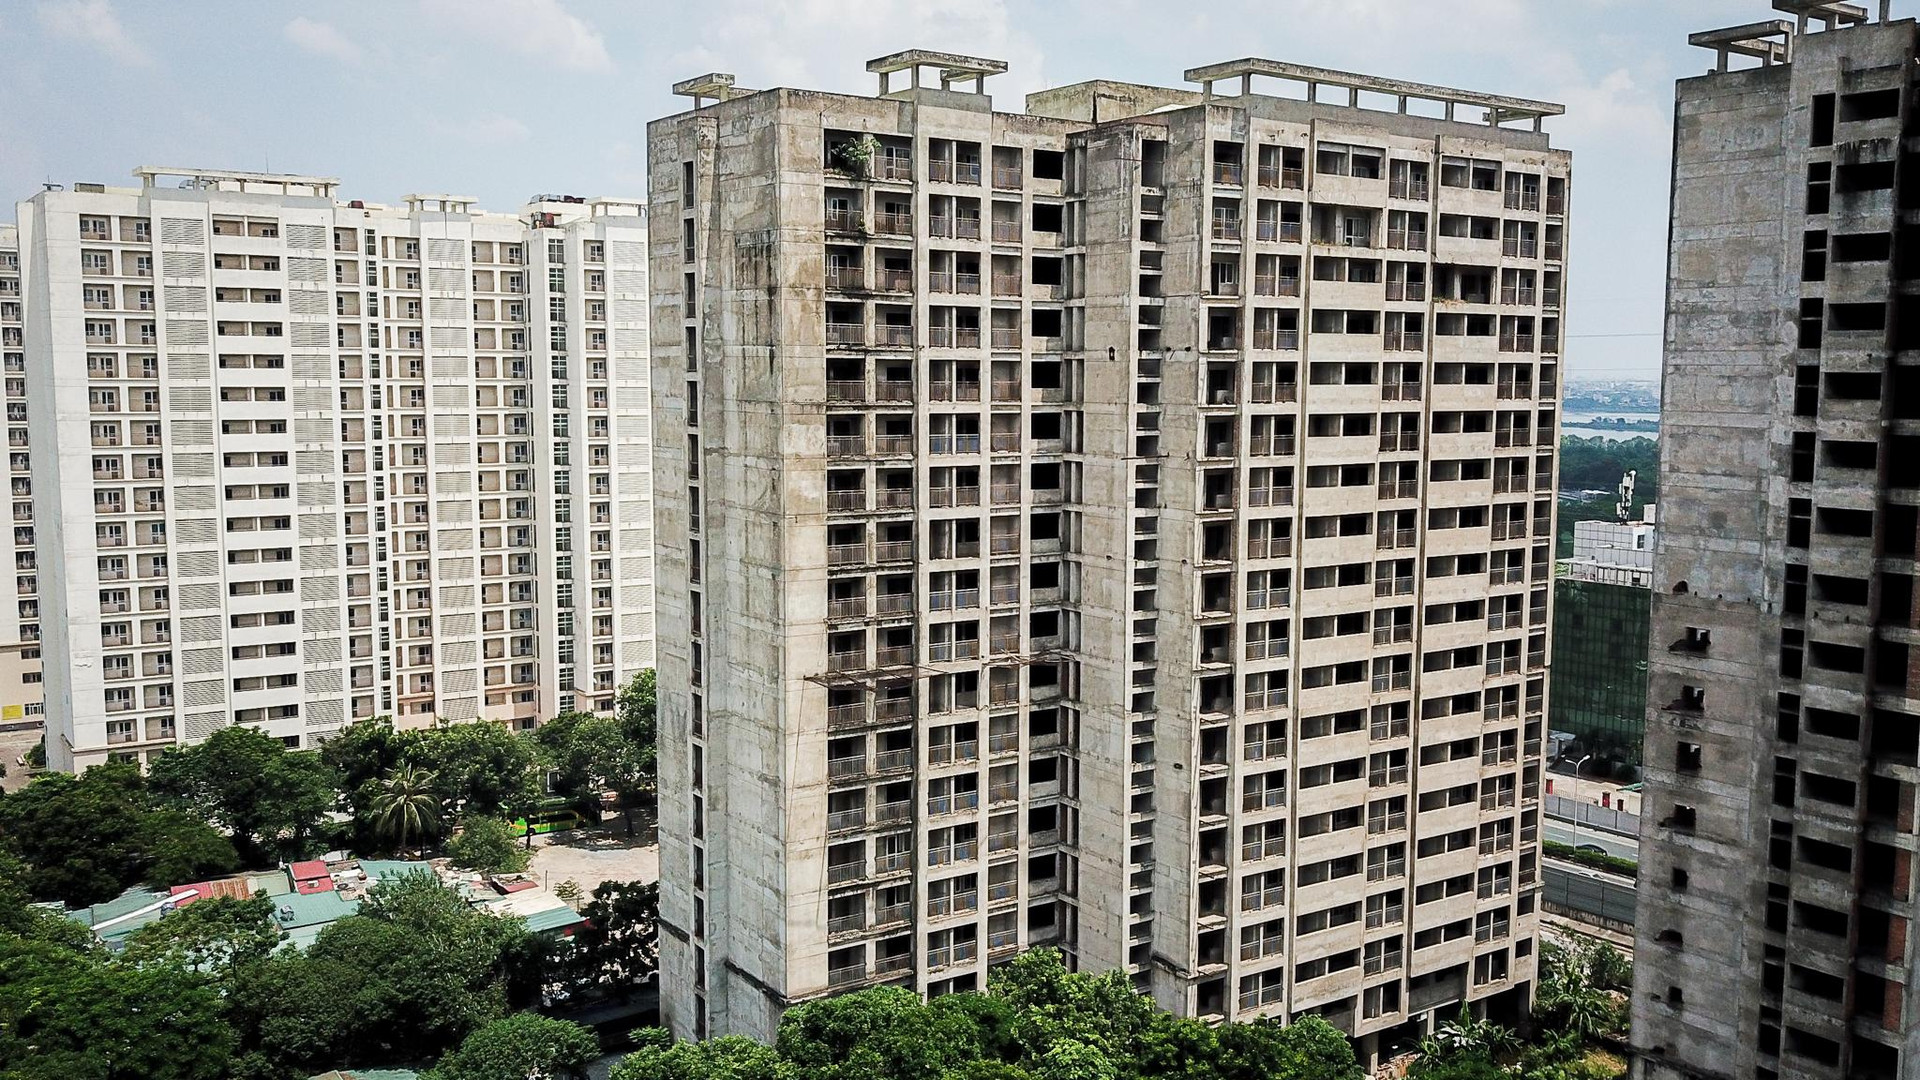 Toàn cảnh hàng nghìn căn hộ chung cư người dân Hà Nội sắp được thuê giá rẻ - Ảnh 3.